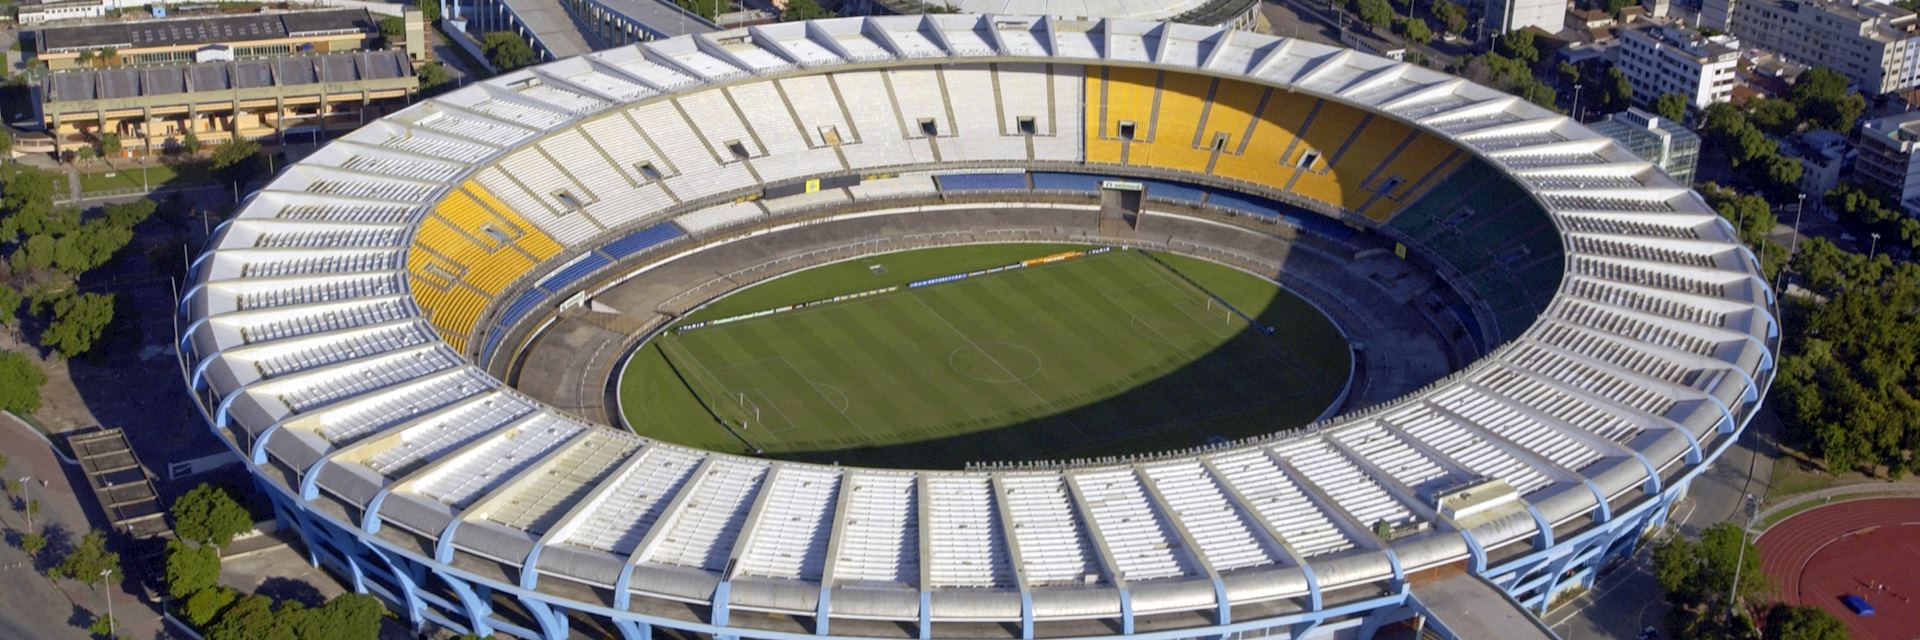 Maracanã Stadium, Rio de Janeiro